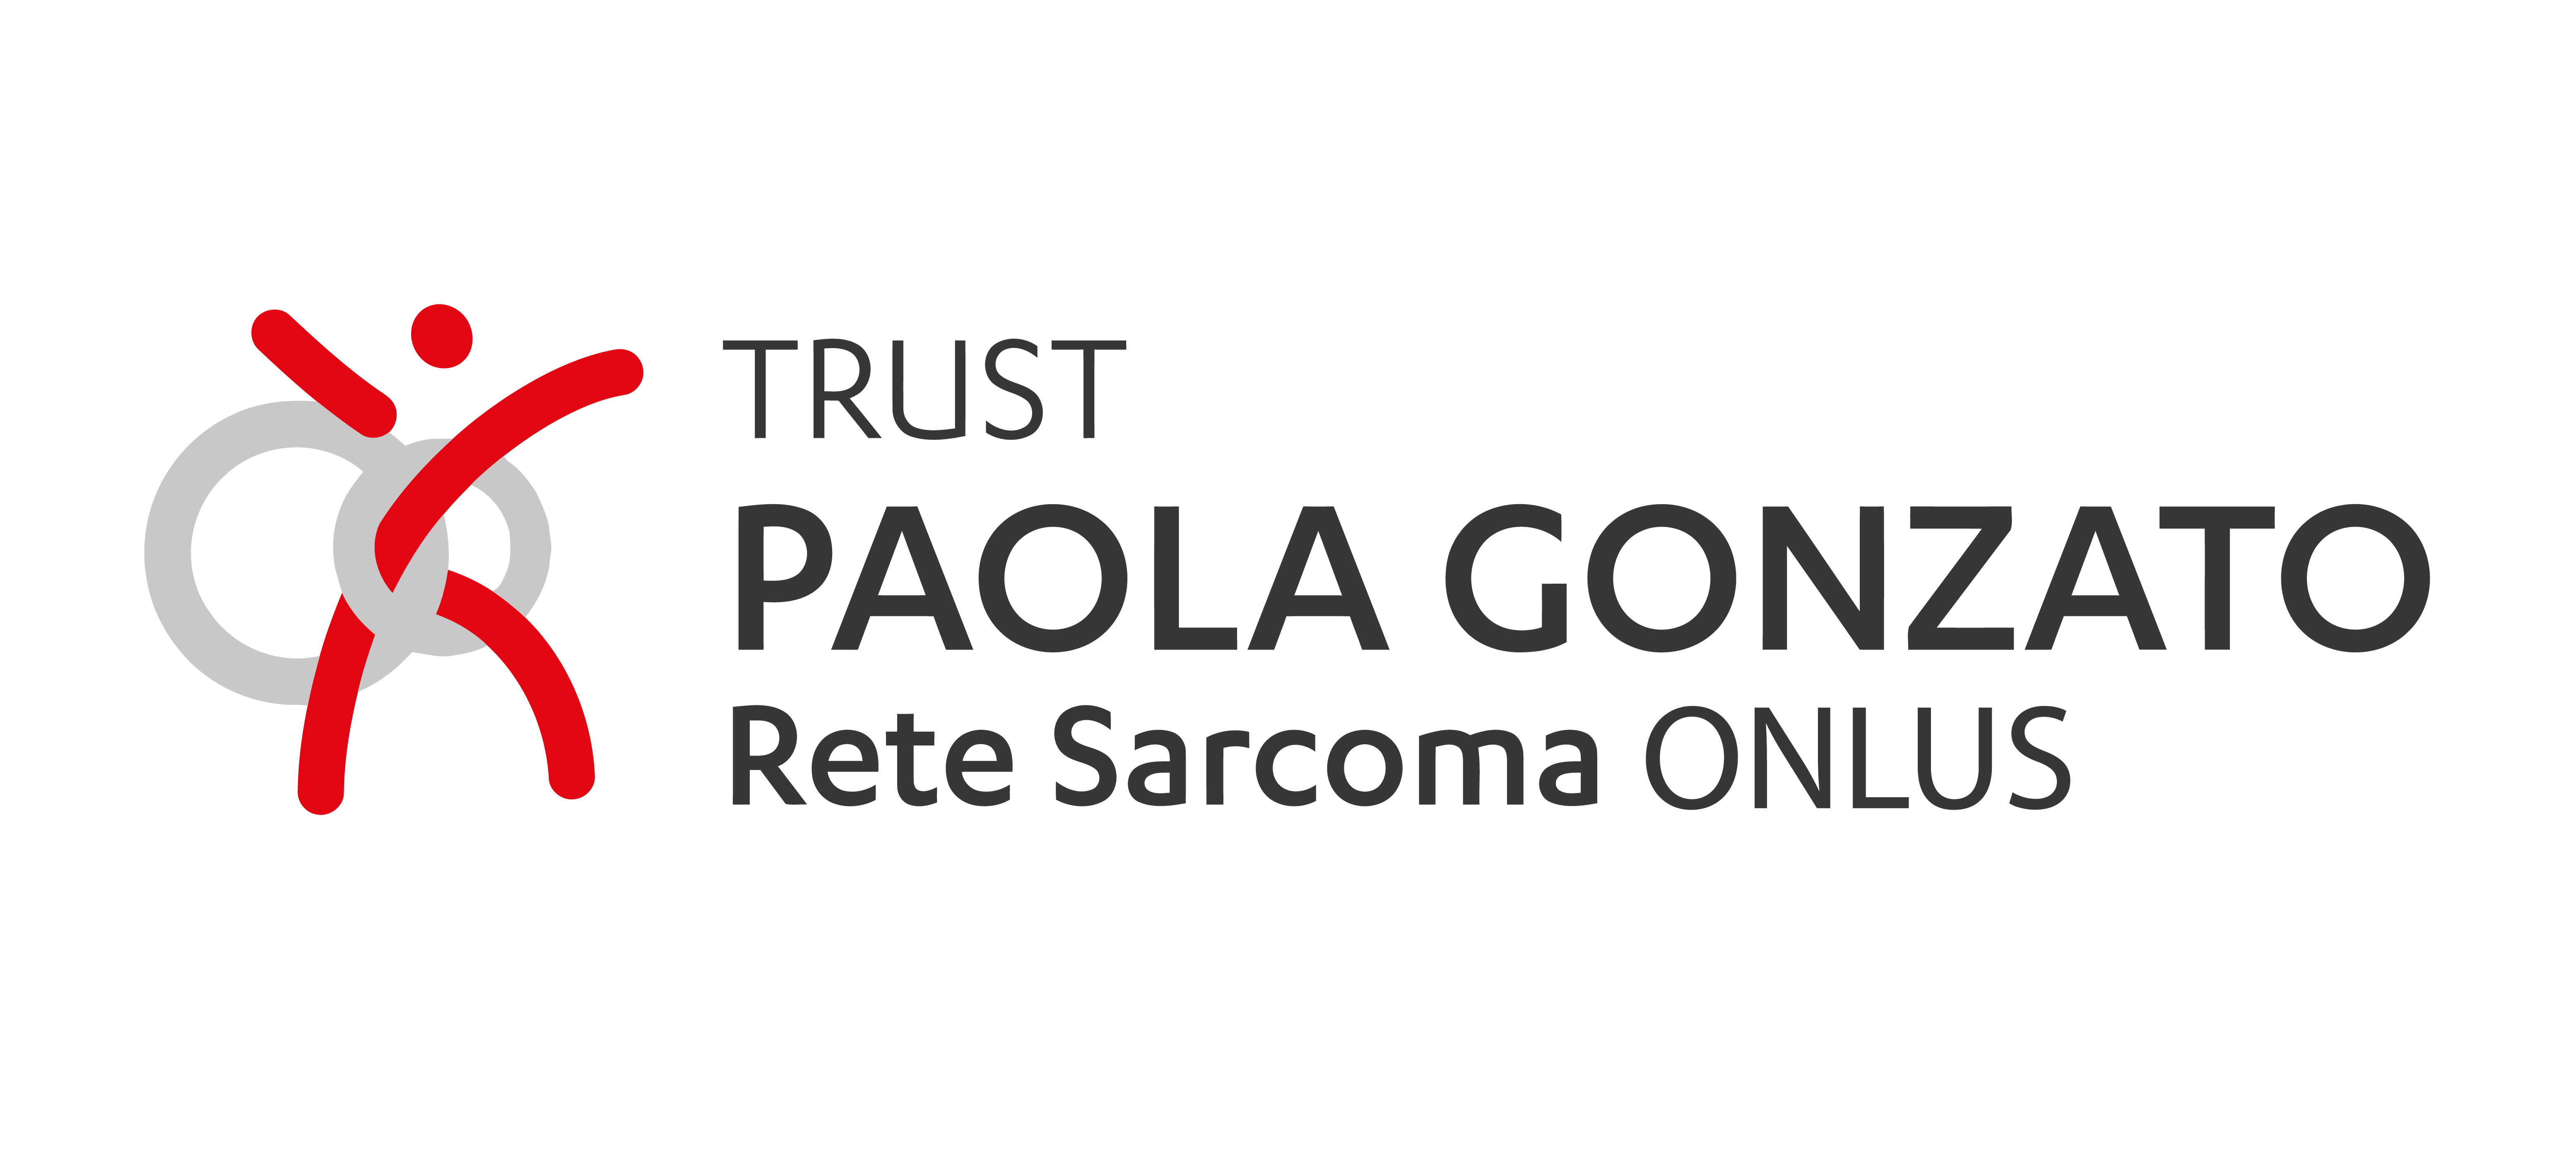 Fondazione Paola Gonzato – Rete Sarcoma Onlus entra a far parte del Gruppo